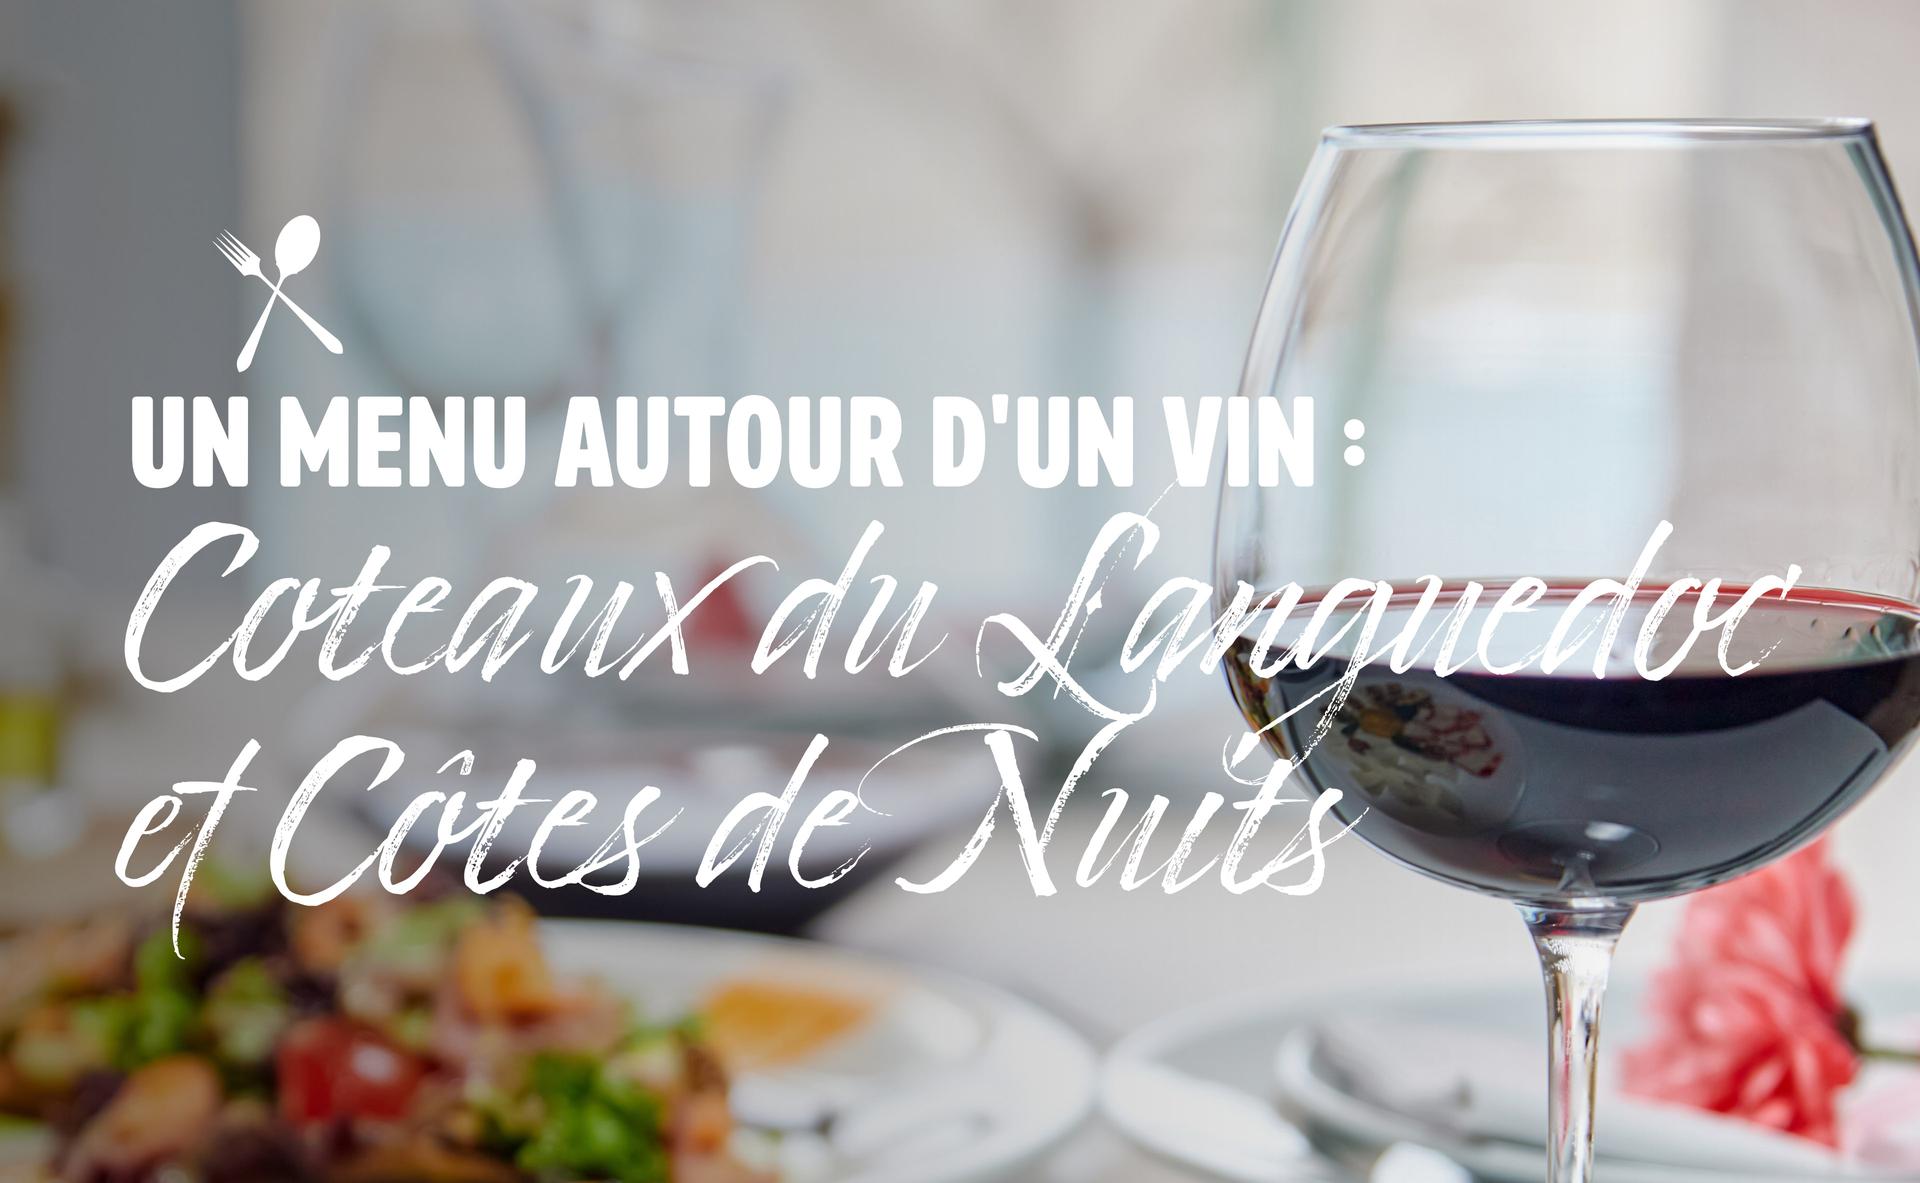 Un menu autour d'un vin : Coteaux du Languedoc et Côtes de Nuits